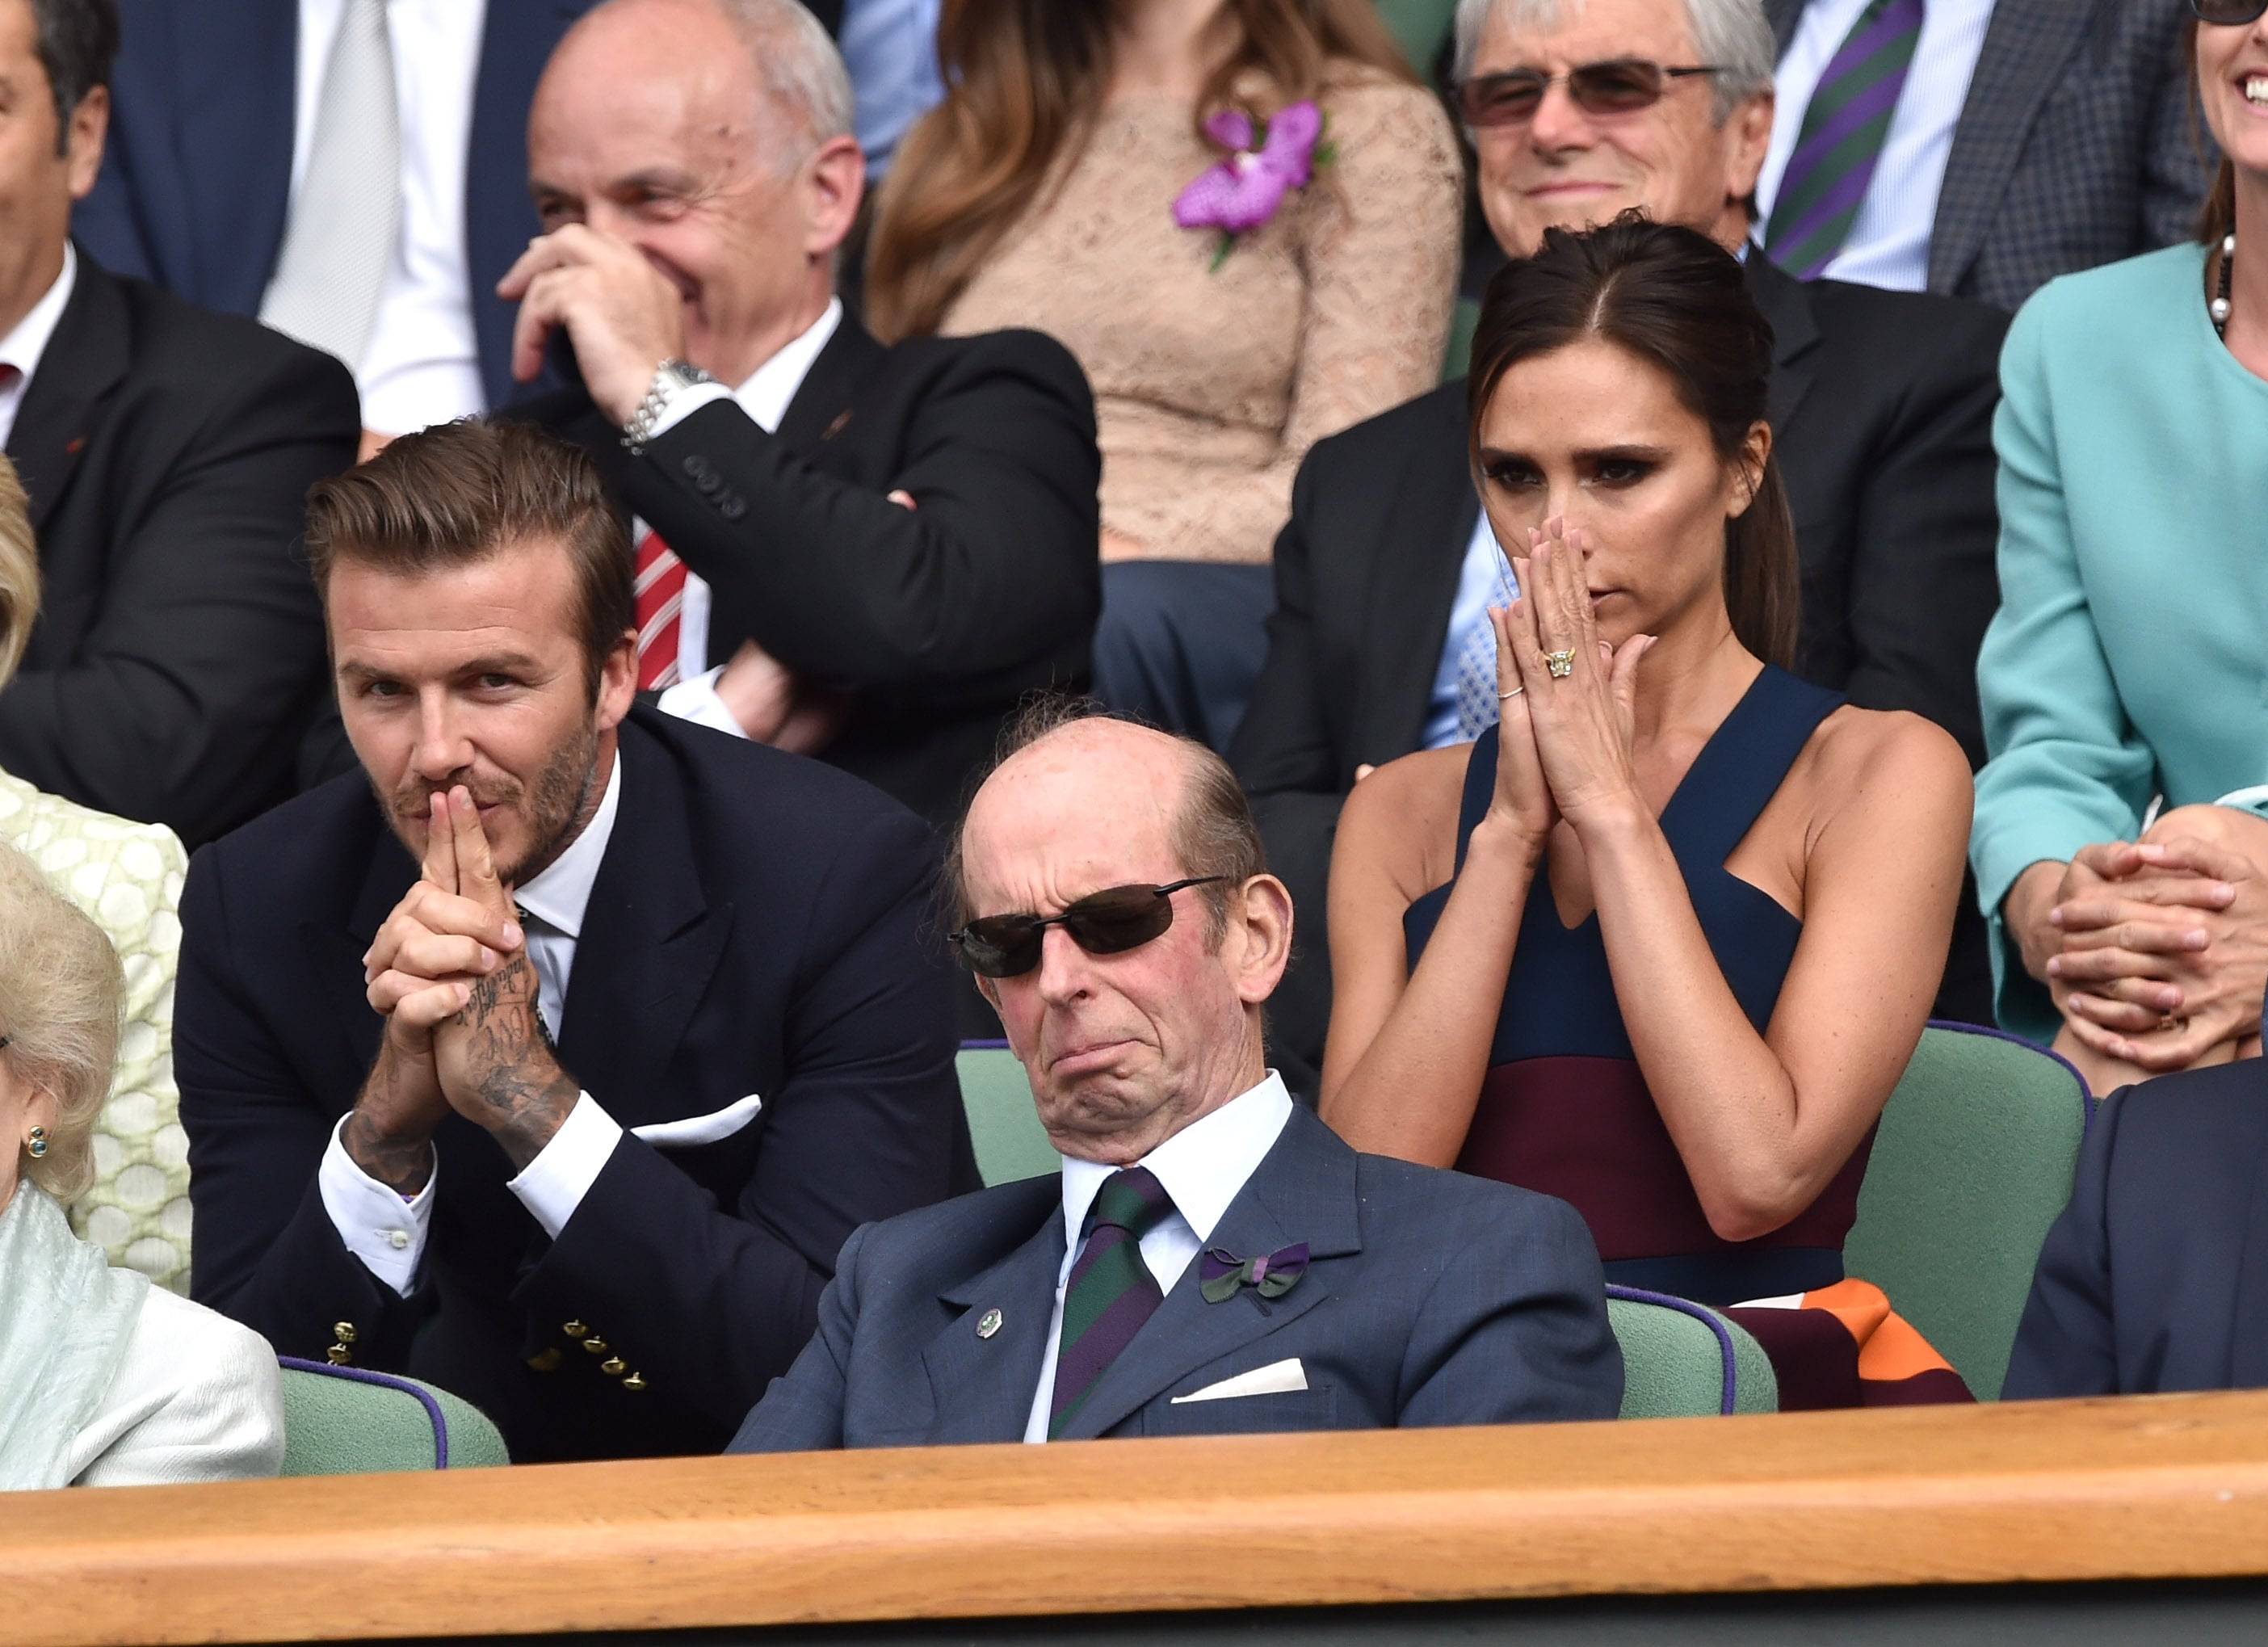 Stella McCartneyat Wimbledon with husband Alasdhair Willis